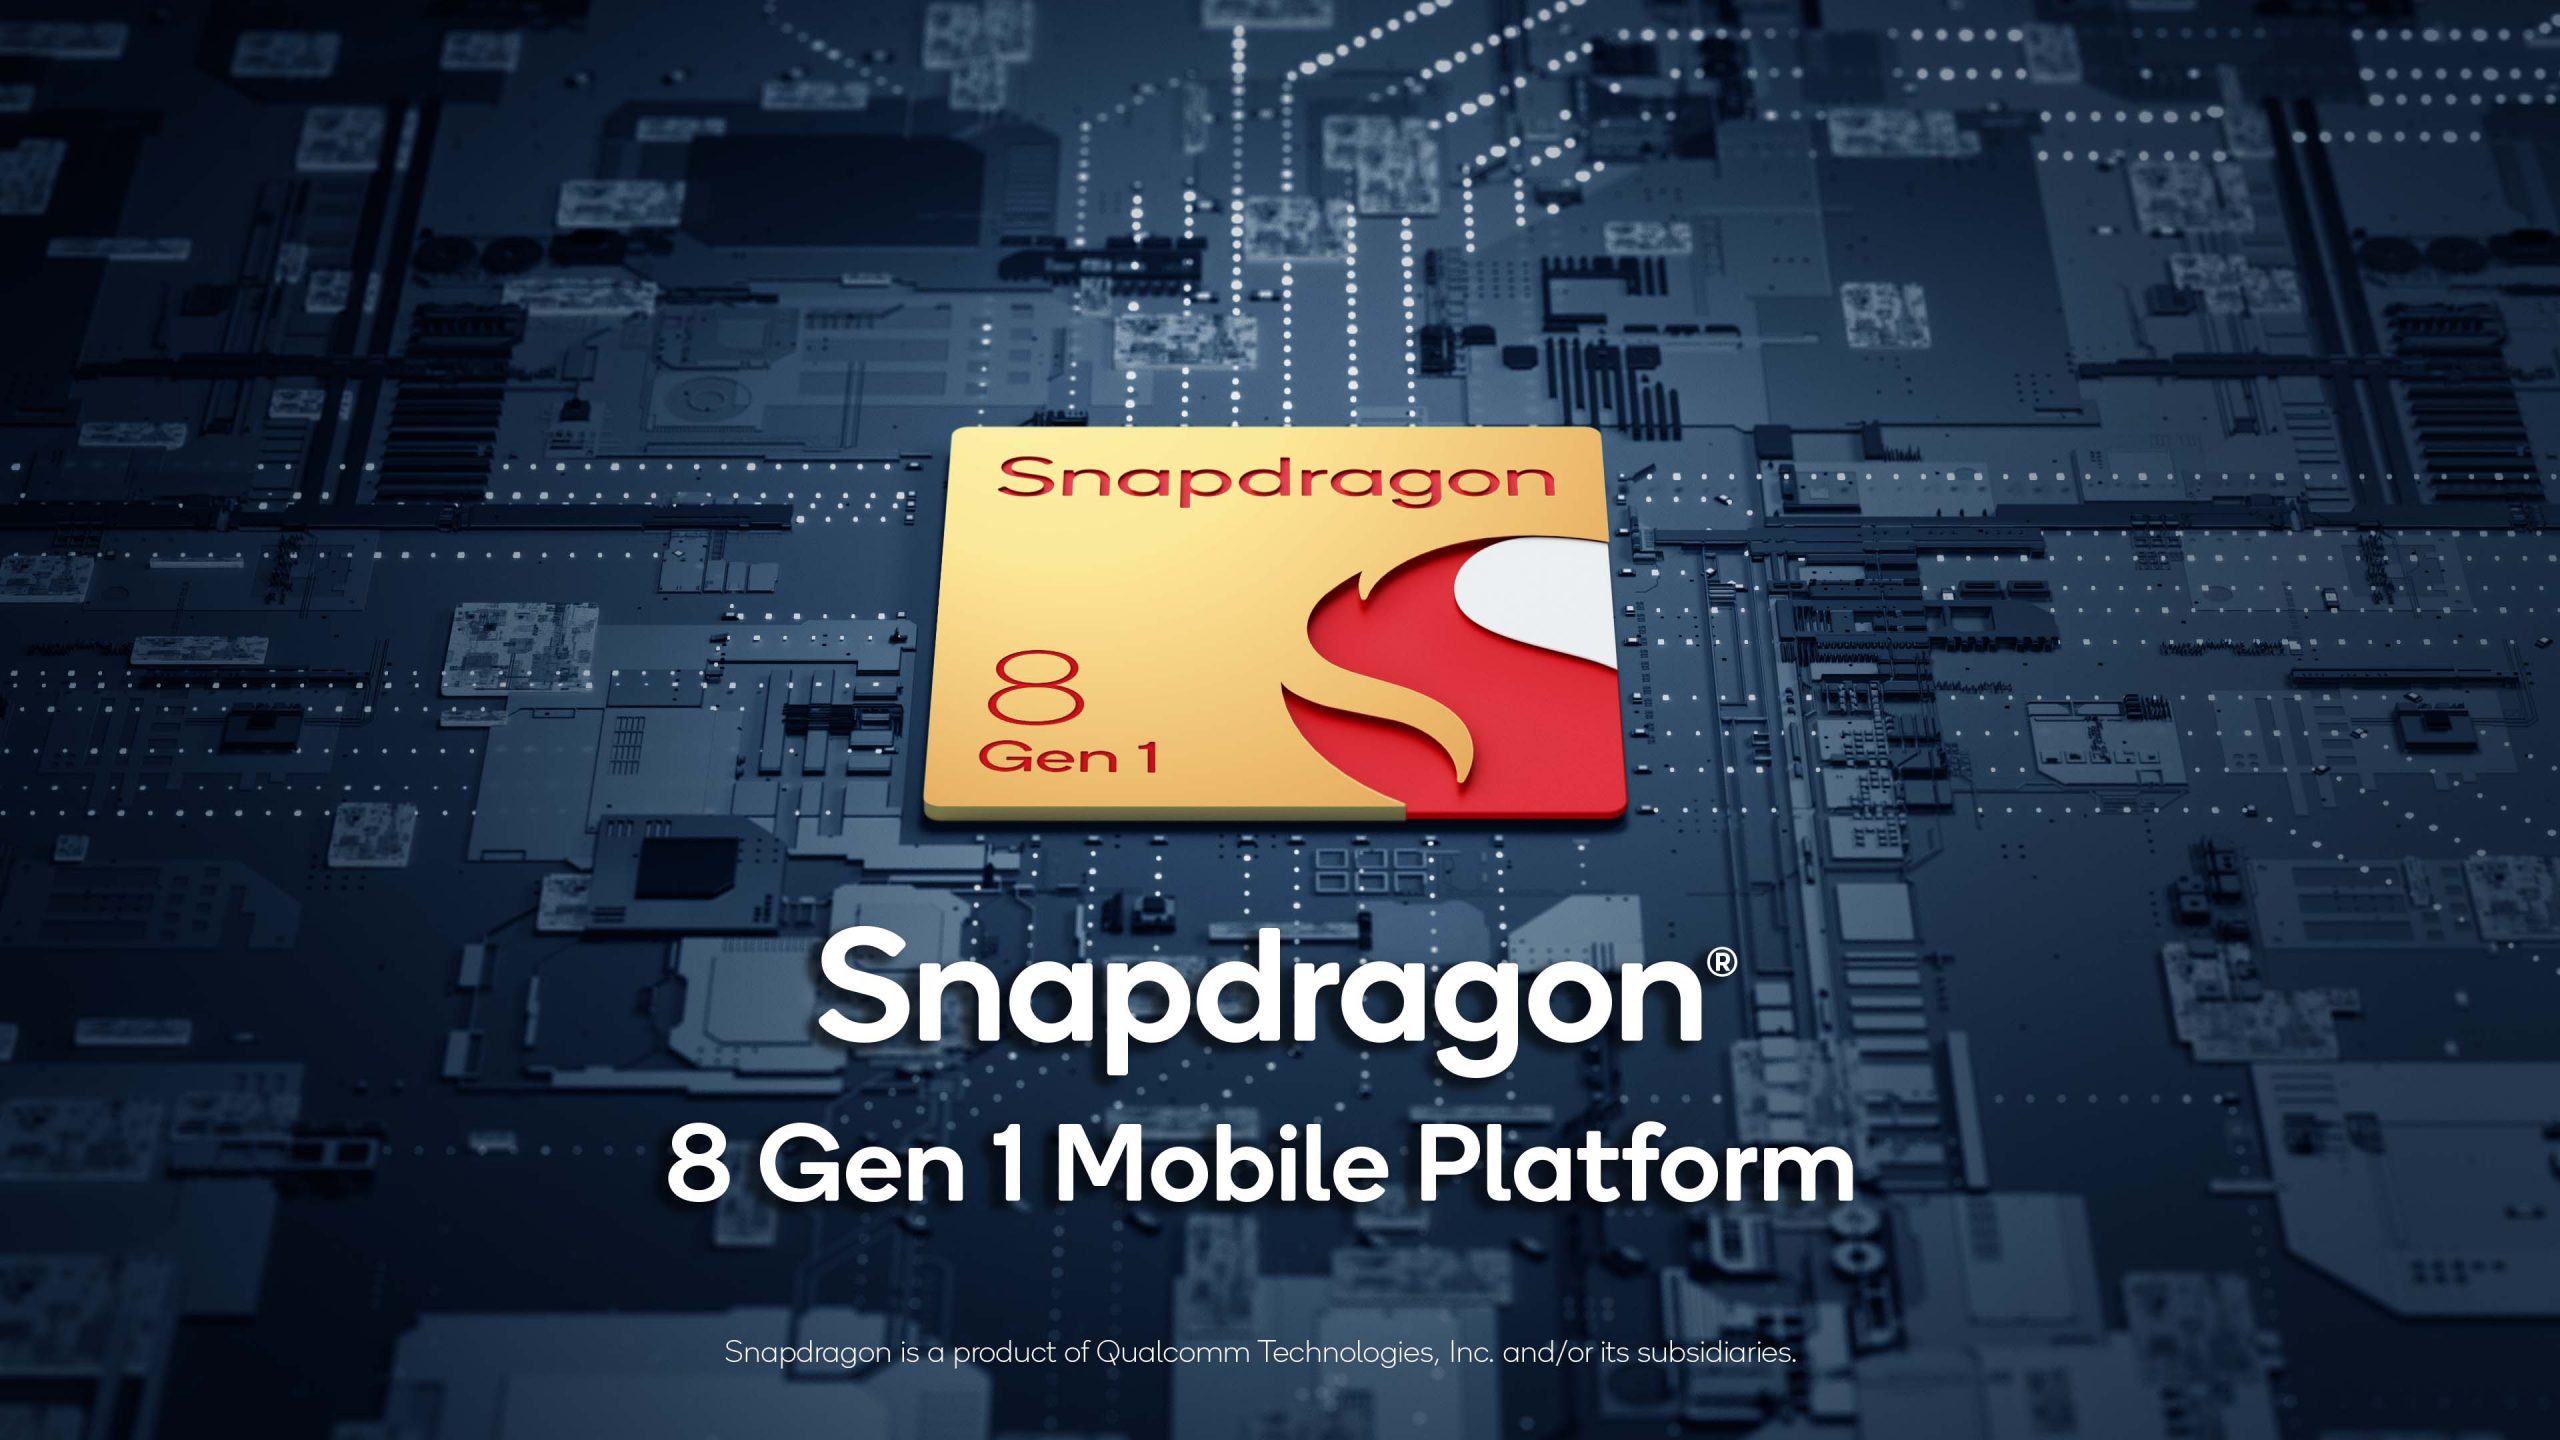 Snapdragon 8 Gen 1 Mobile Platform Key Visual Angle 3 scaled